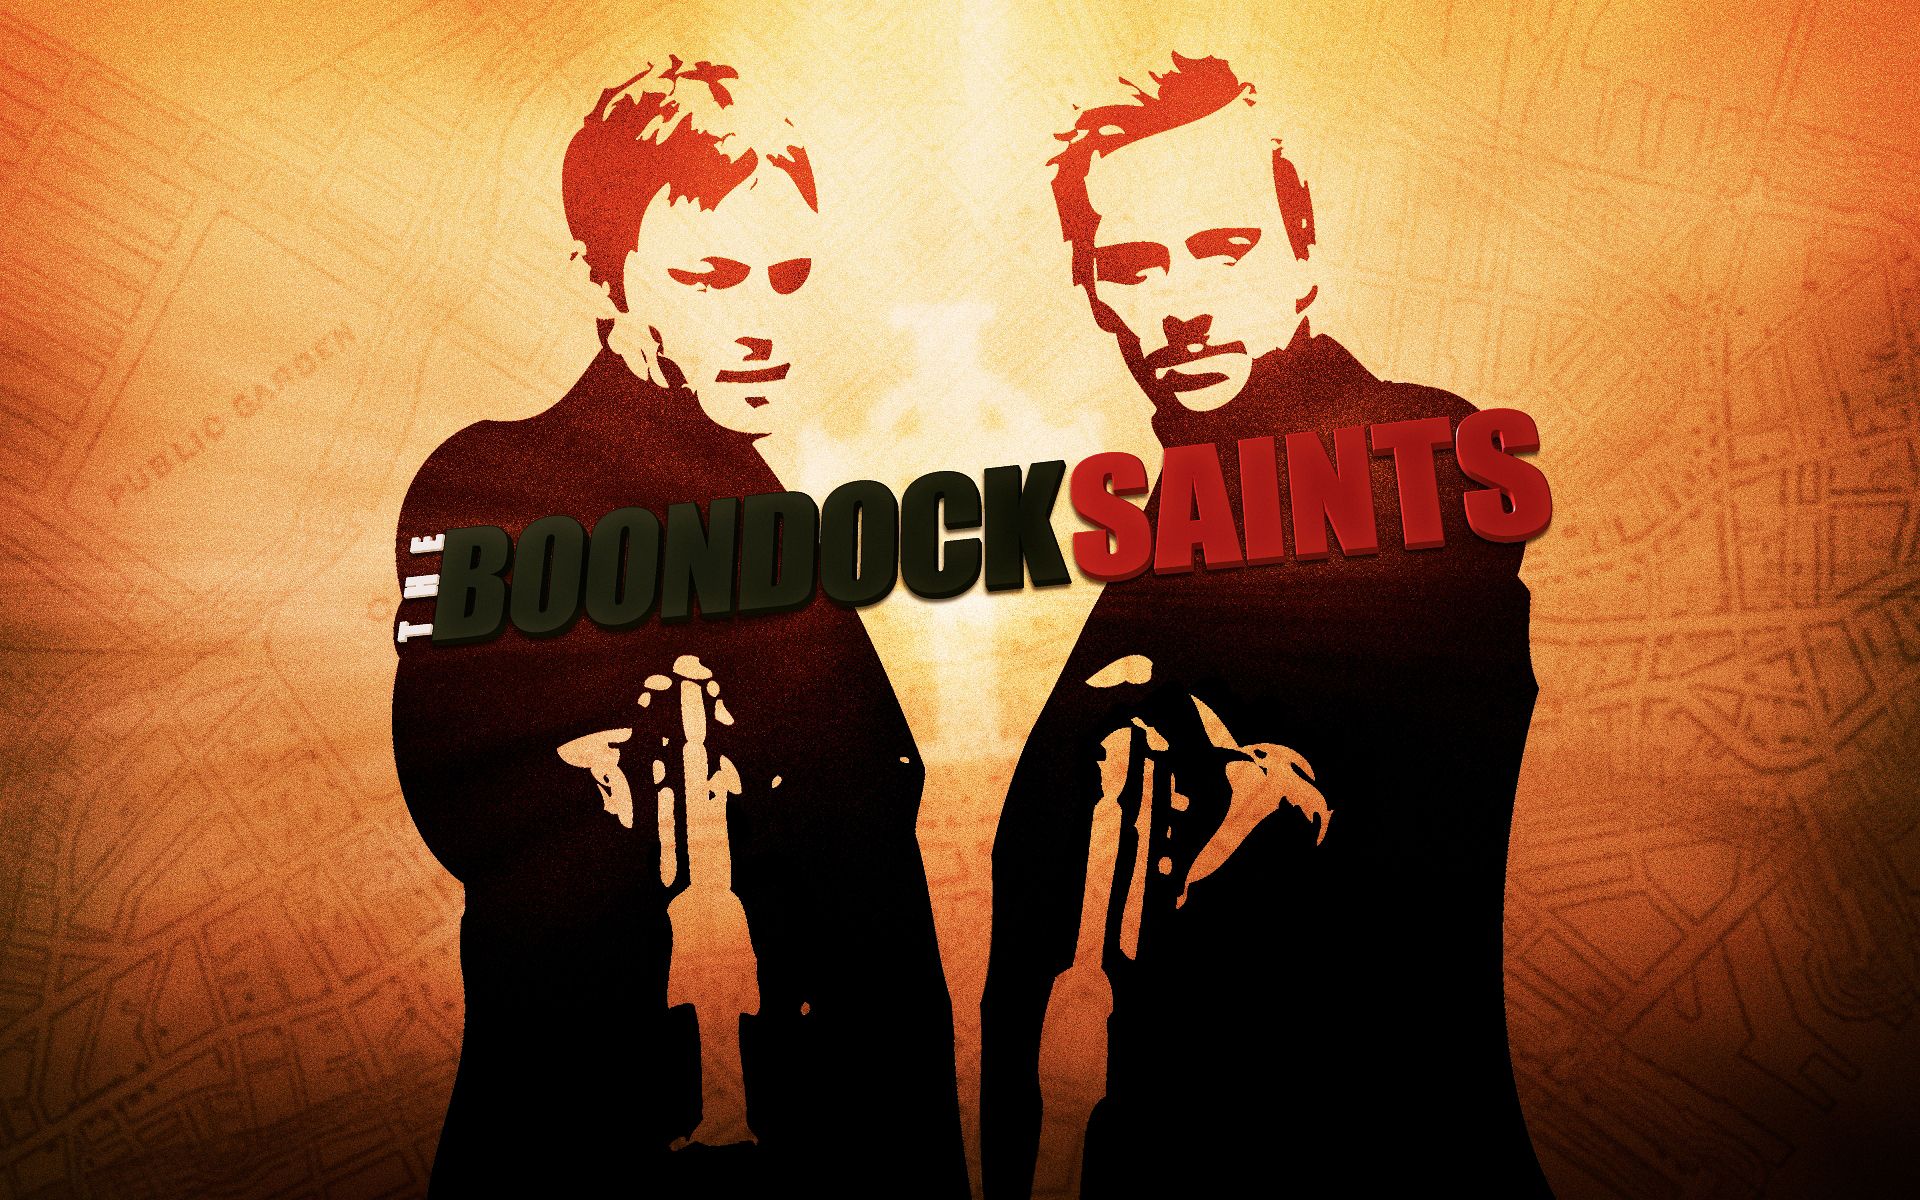 The Boondock Saints by SE7ENFX on DeviantArt